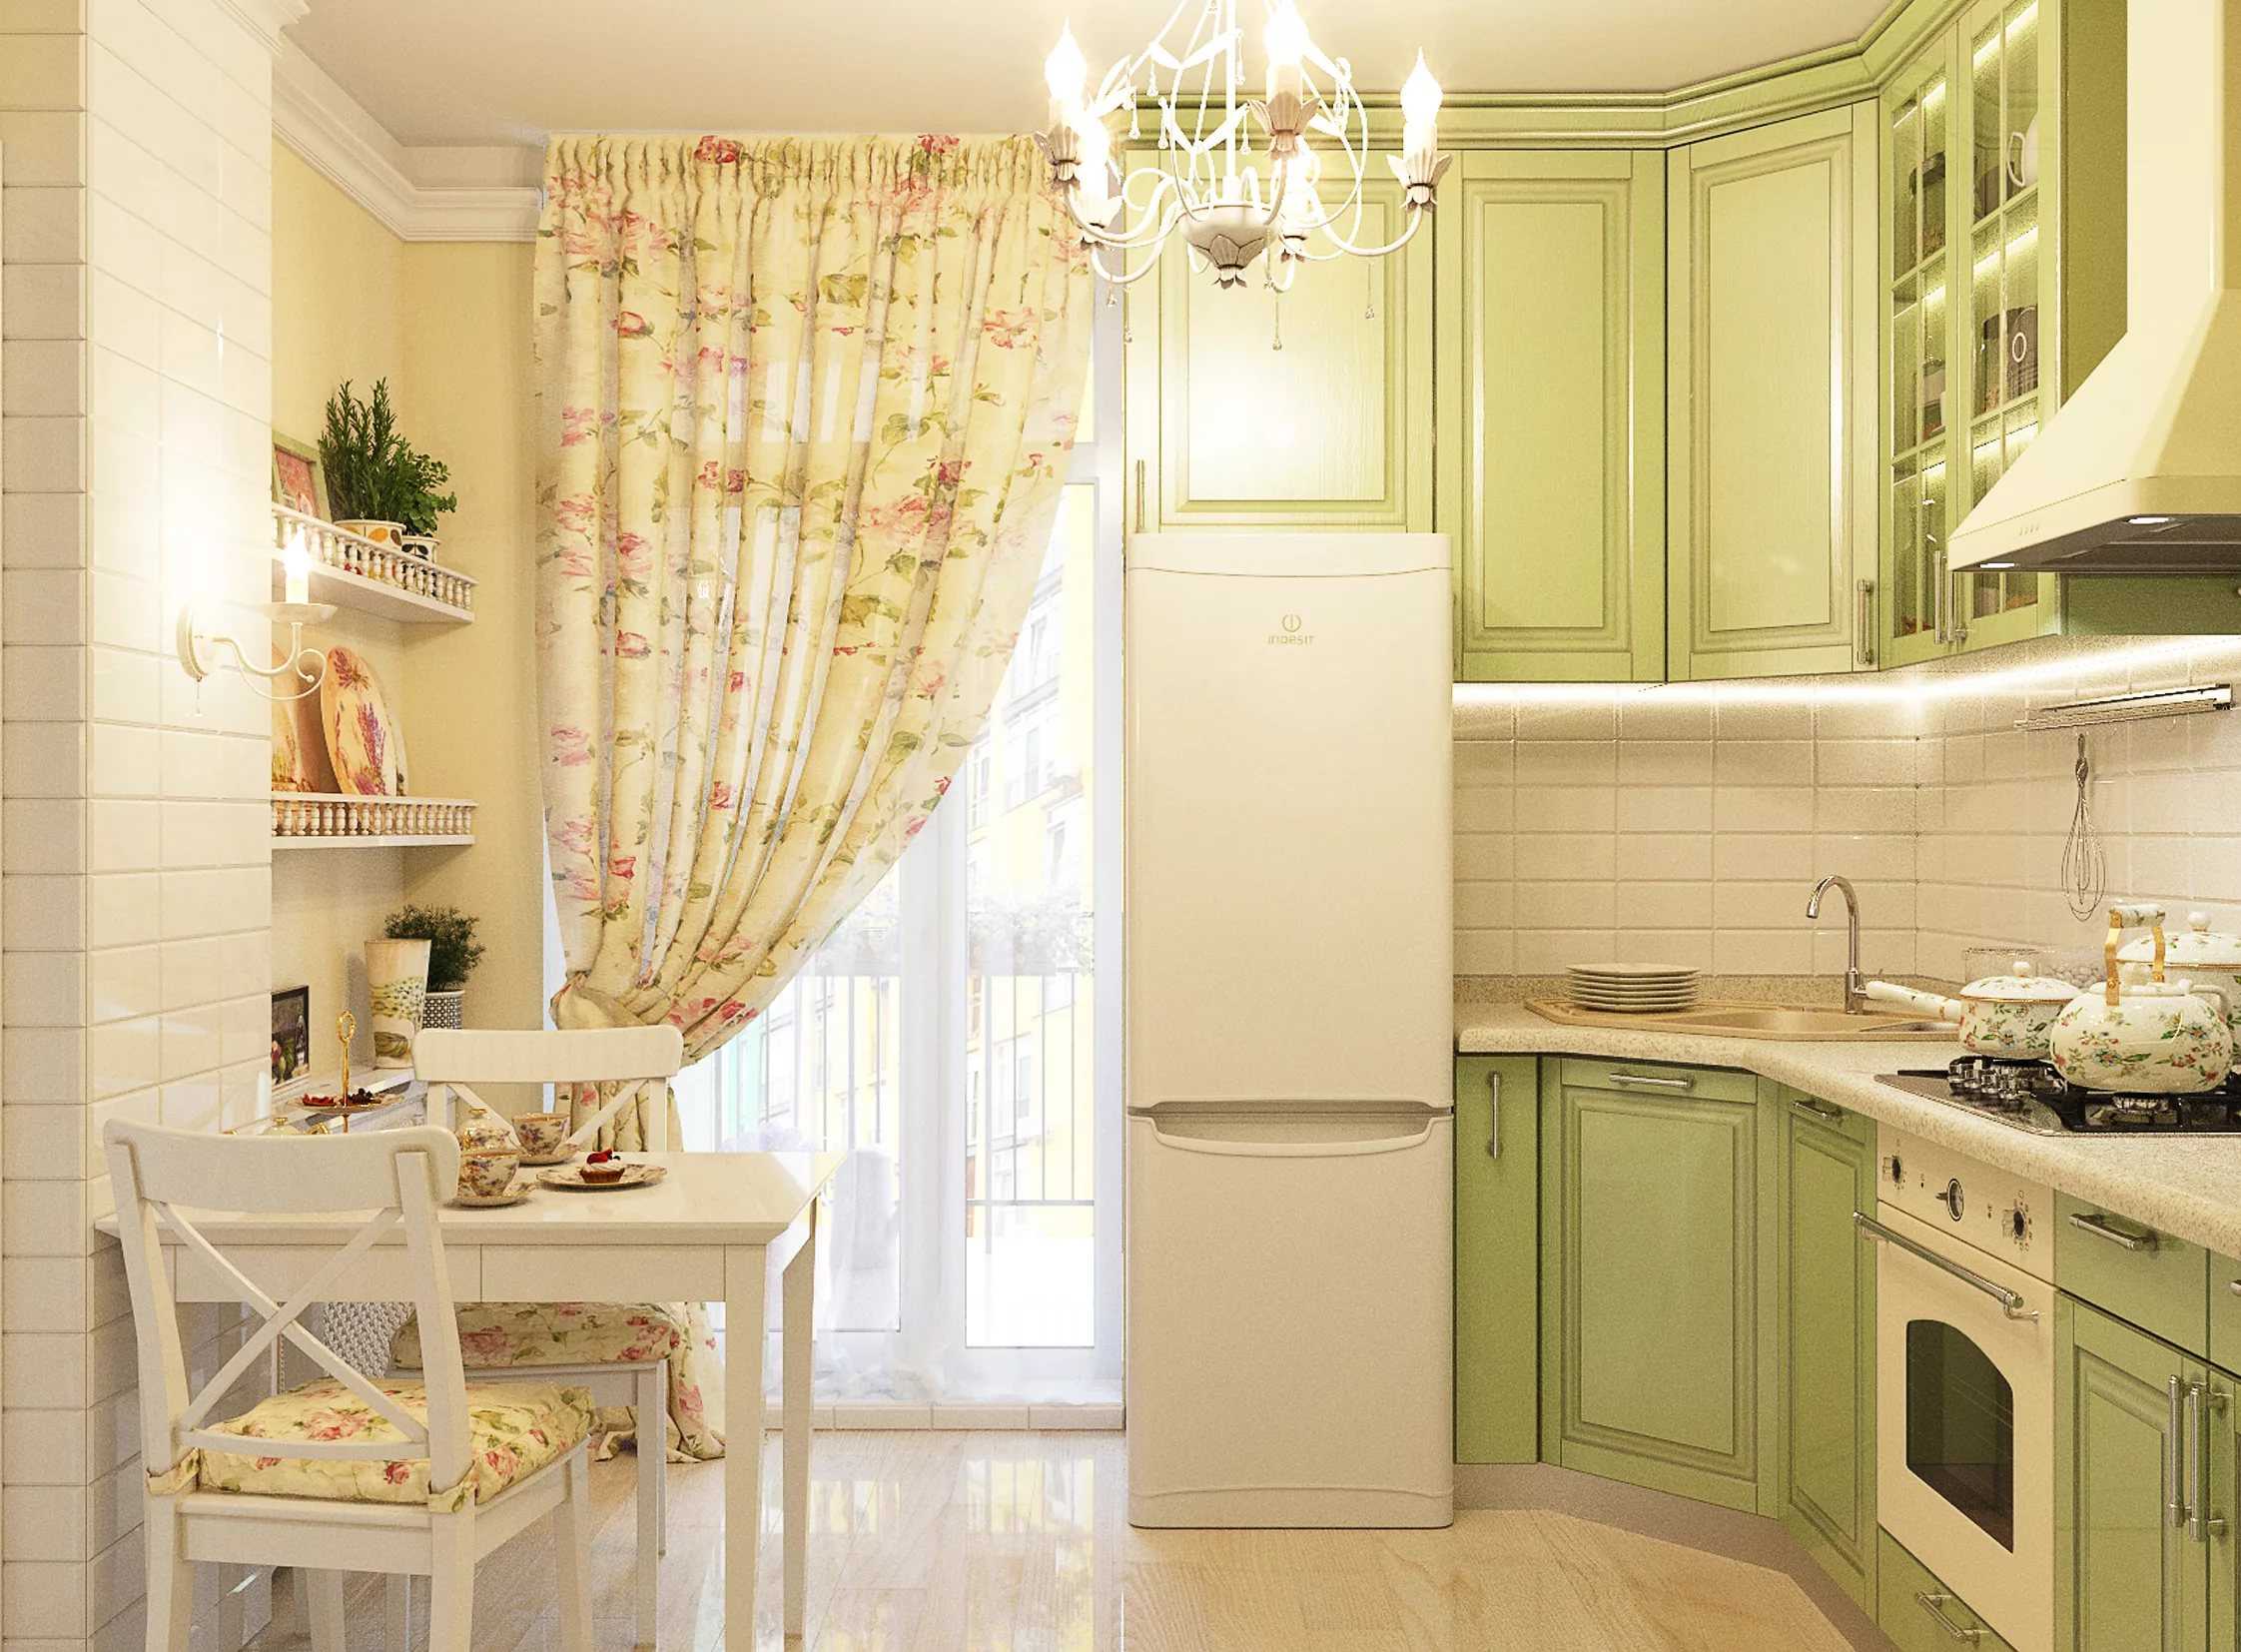 Этот один из самых удачных стилей для оформления кухни-гостиной Прованс - романтичен, уютен и красив Вот классная подборка уже готовых интерьеров